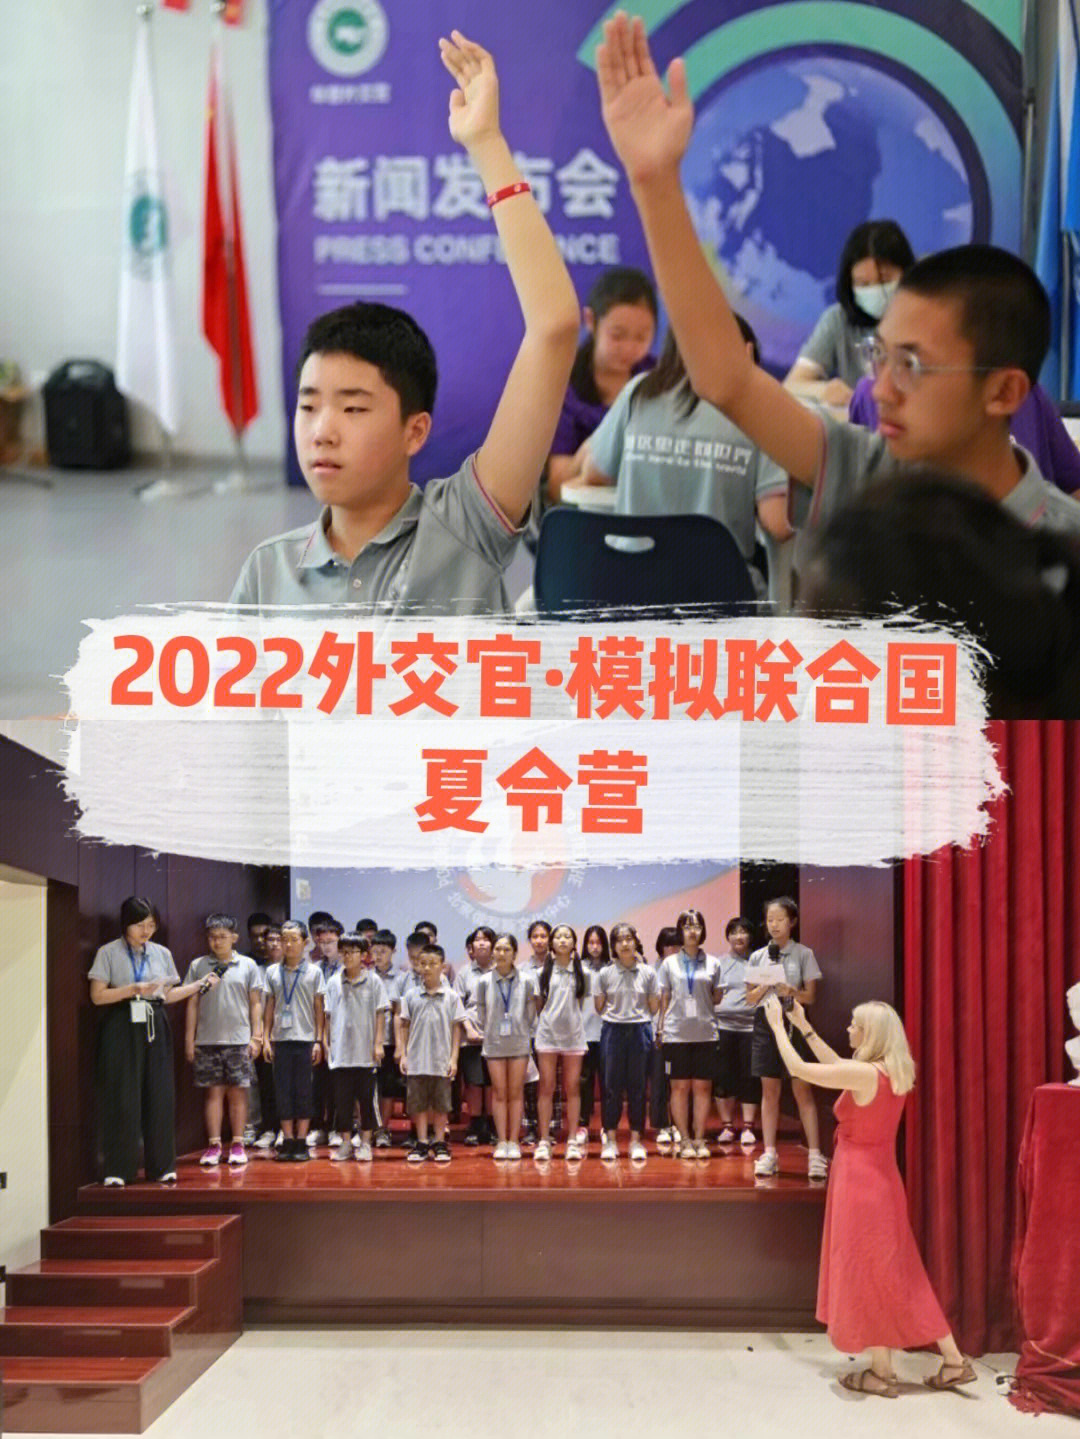 2022国际青少年模拟联合国项目启动啦